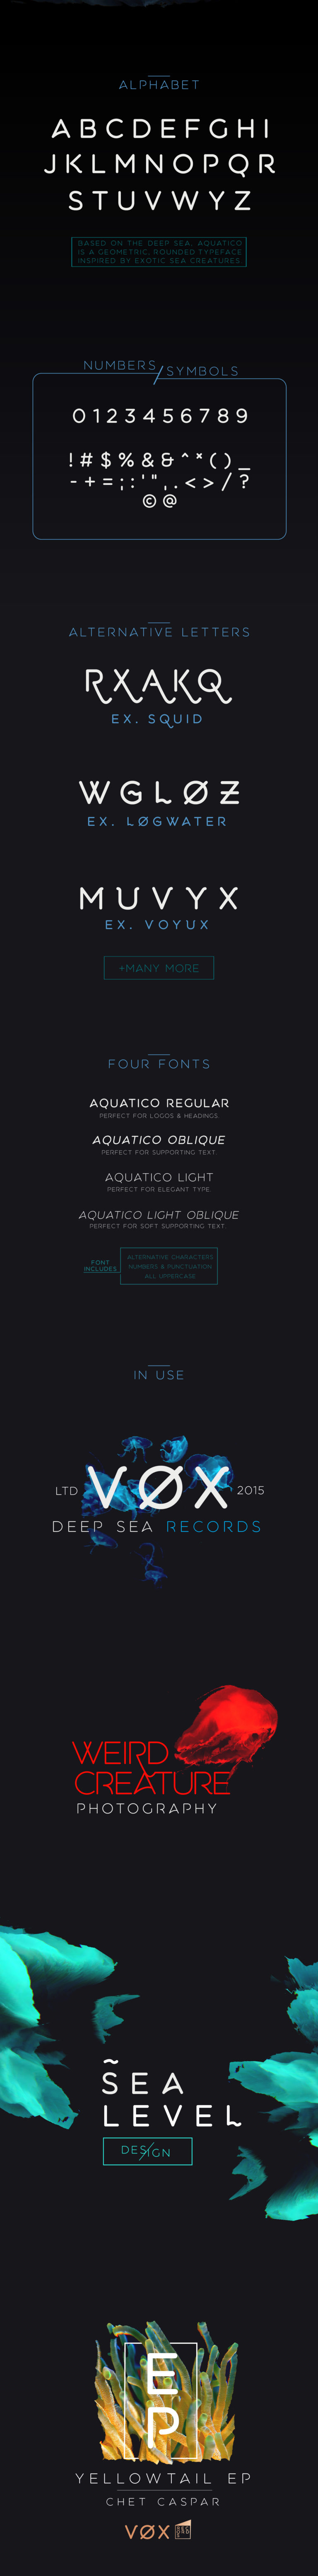 aquatico free font